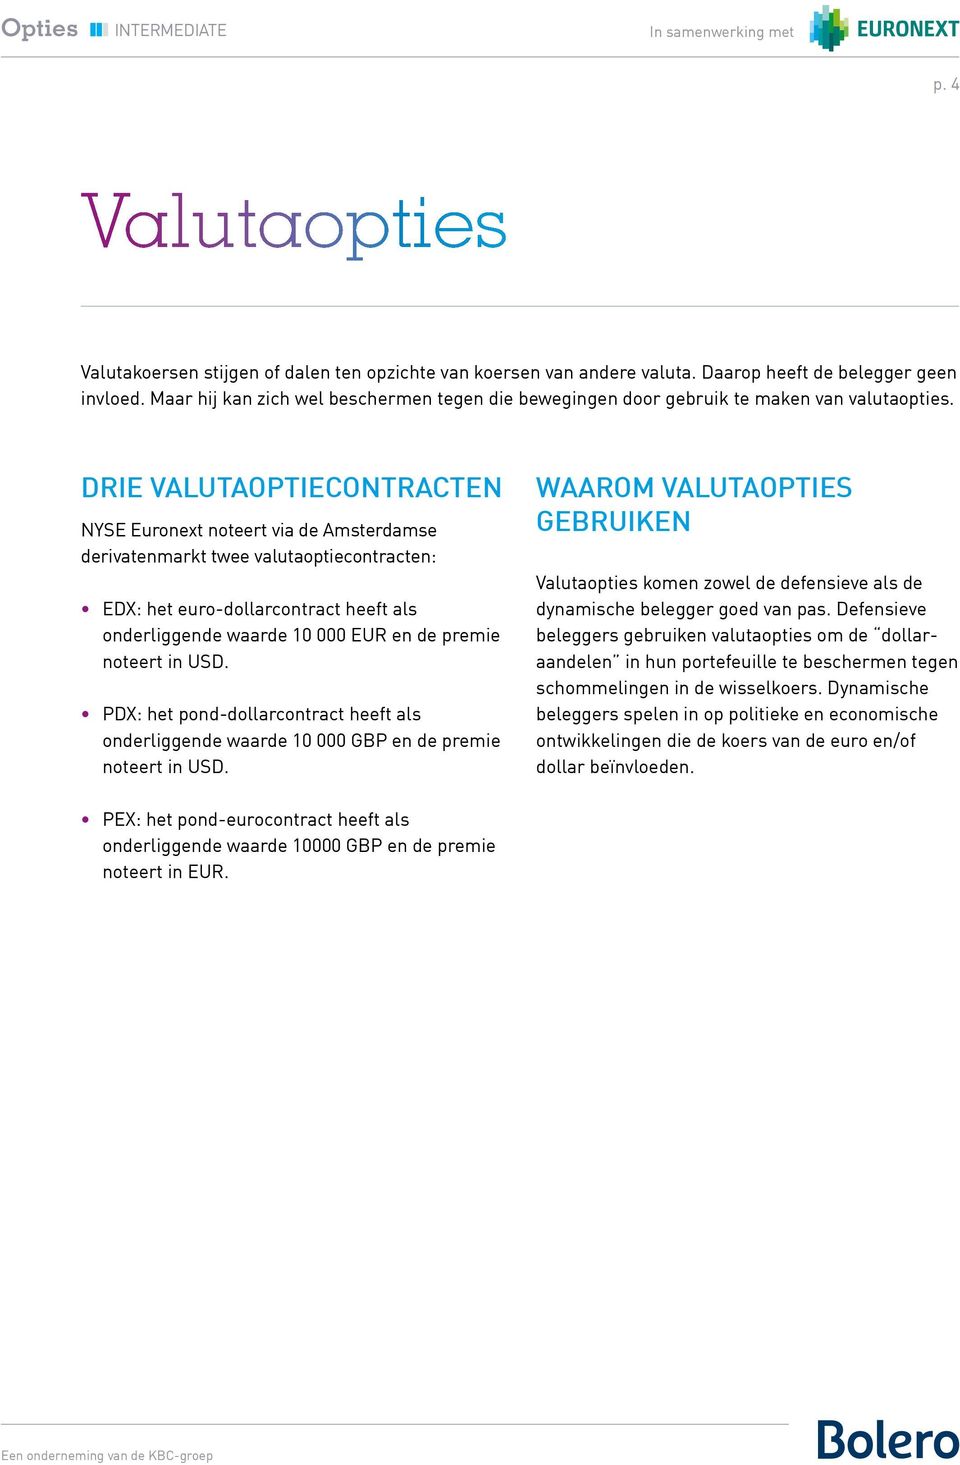 DRIE VALUTAOPTIECONTRACTEN NYSE Euronext noteert via de Amsterdamse derivatenmarkt twee valutaoptiecontracten: EDX: het euro-dollarcontract heeft als onderliggende waarde 10 000 EUR en de premie